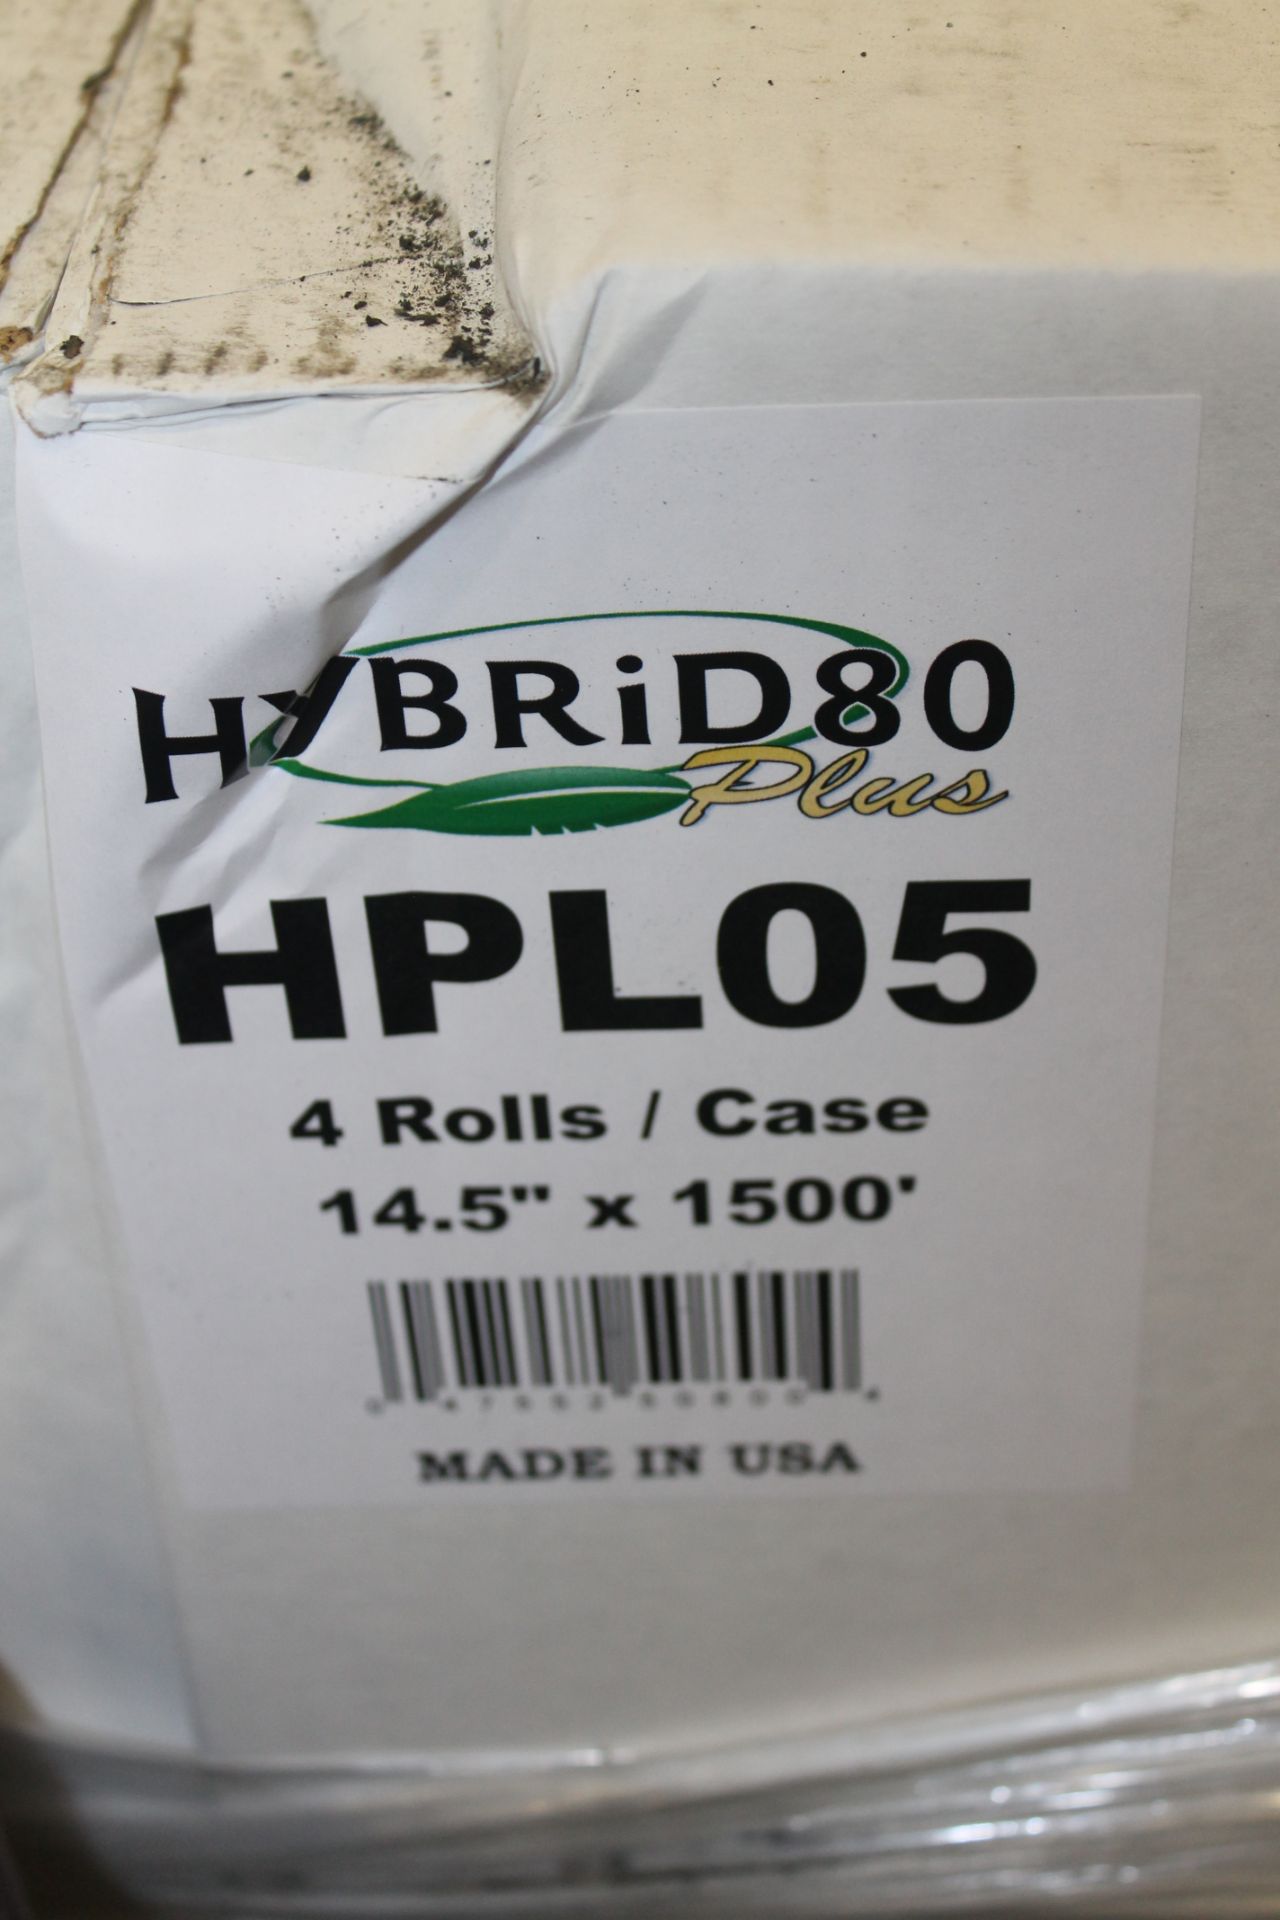 HYBRID80 PLUS 14.5"W HANDWRAP STRETCH FILM, - Image 2 of 2